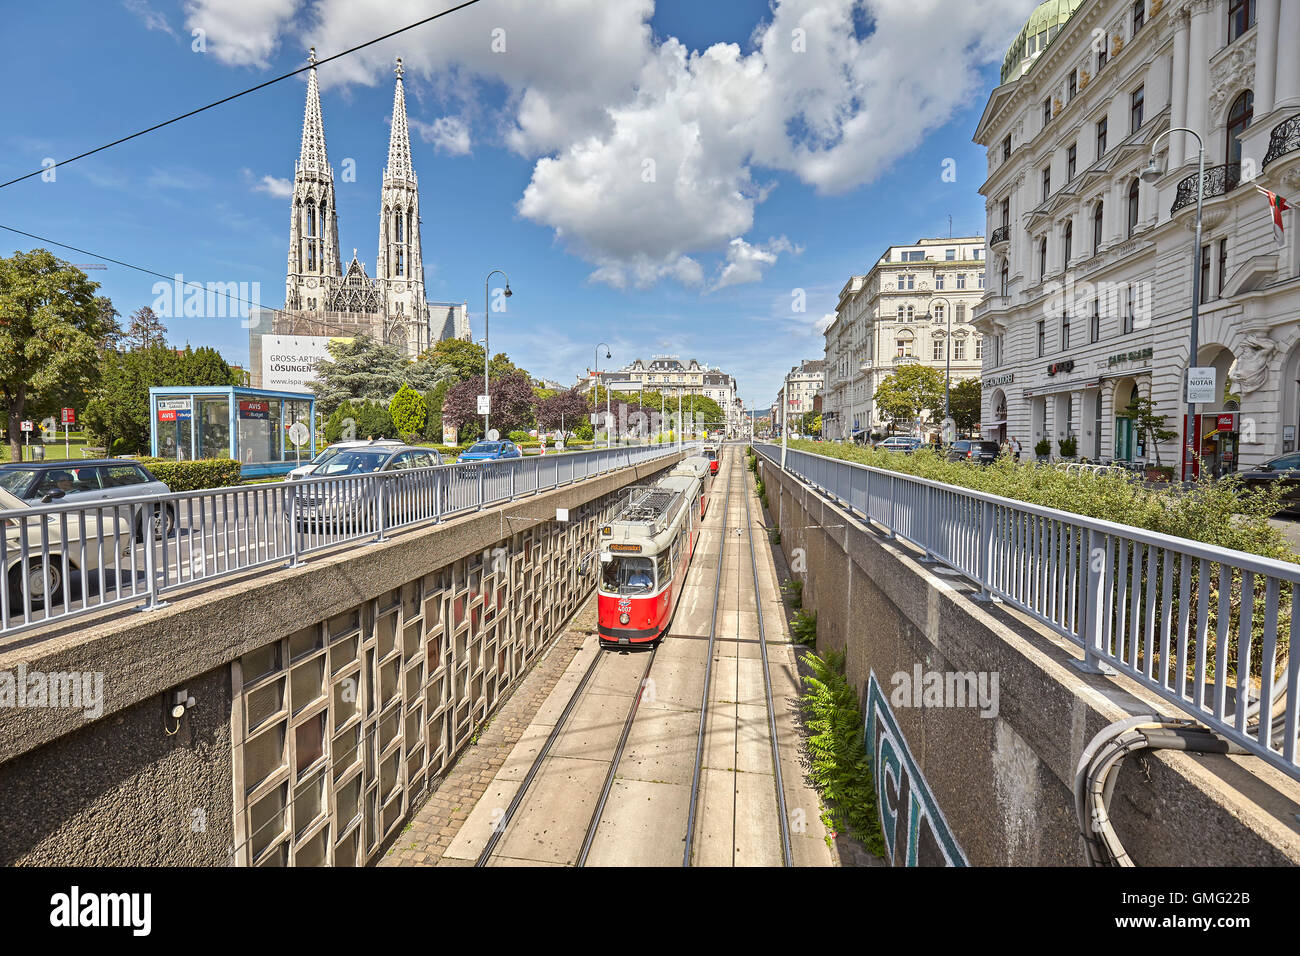 Vienna, Austria - August 14, 2016: Tram entering tunnel with Votive Church in distance. Stock Photo